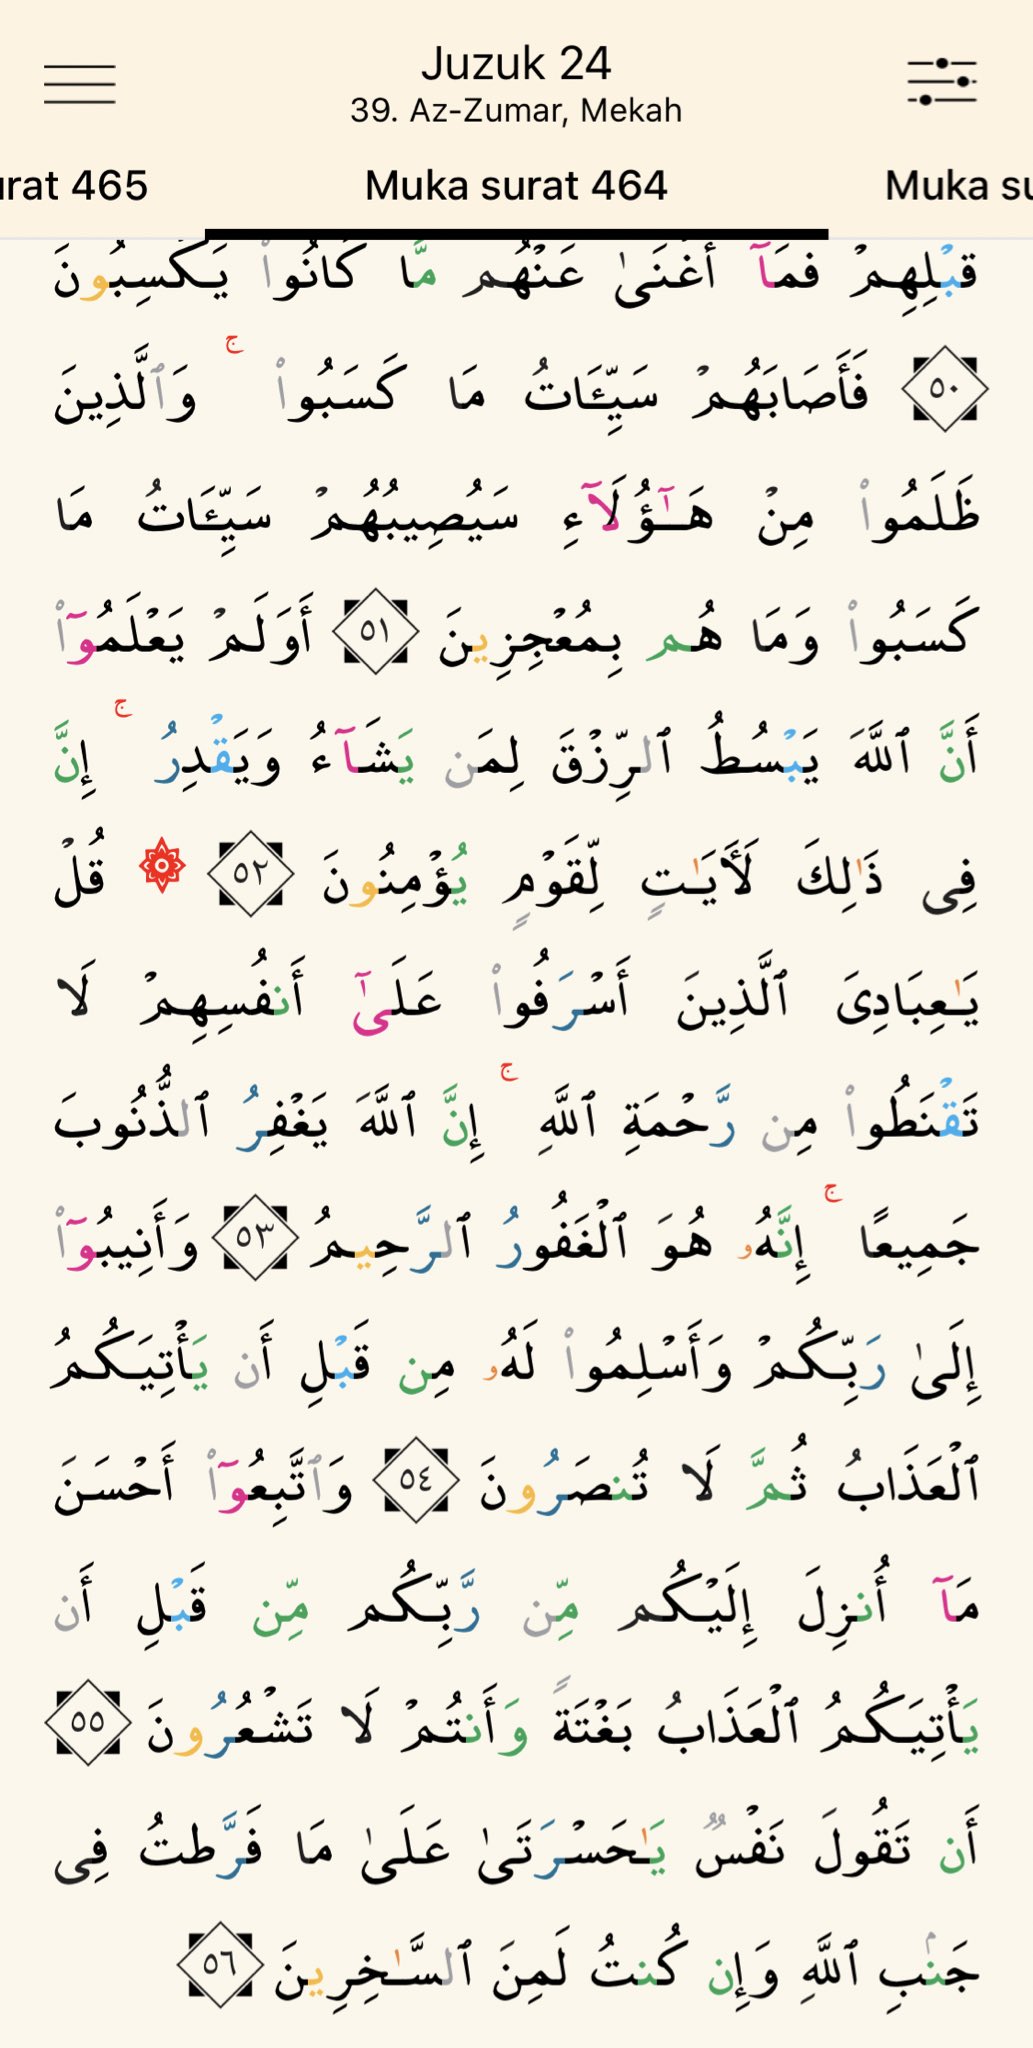 24 surat juz muka Qur'an Juz